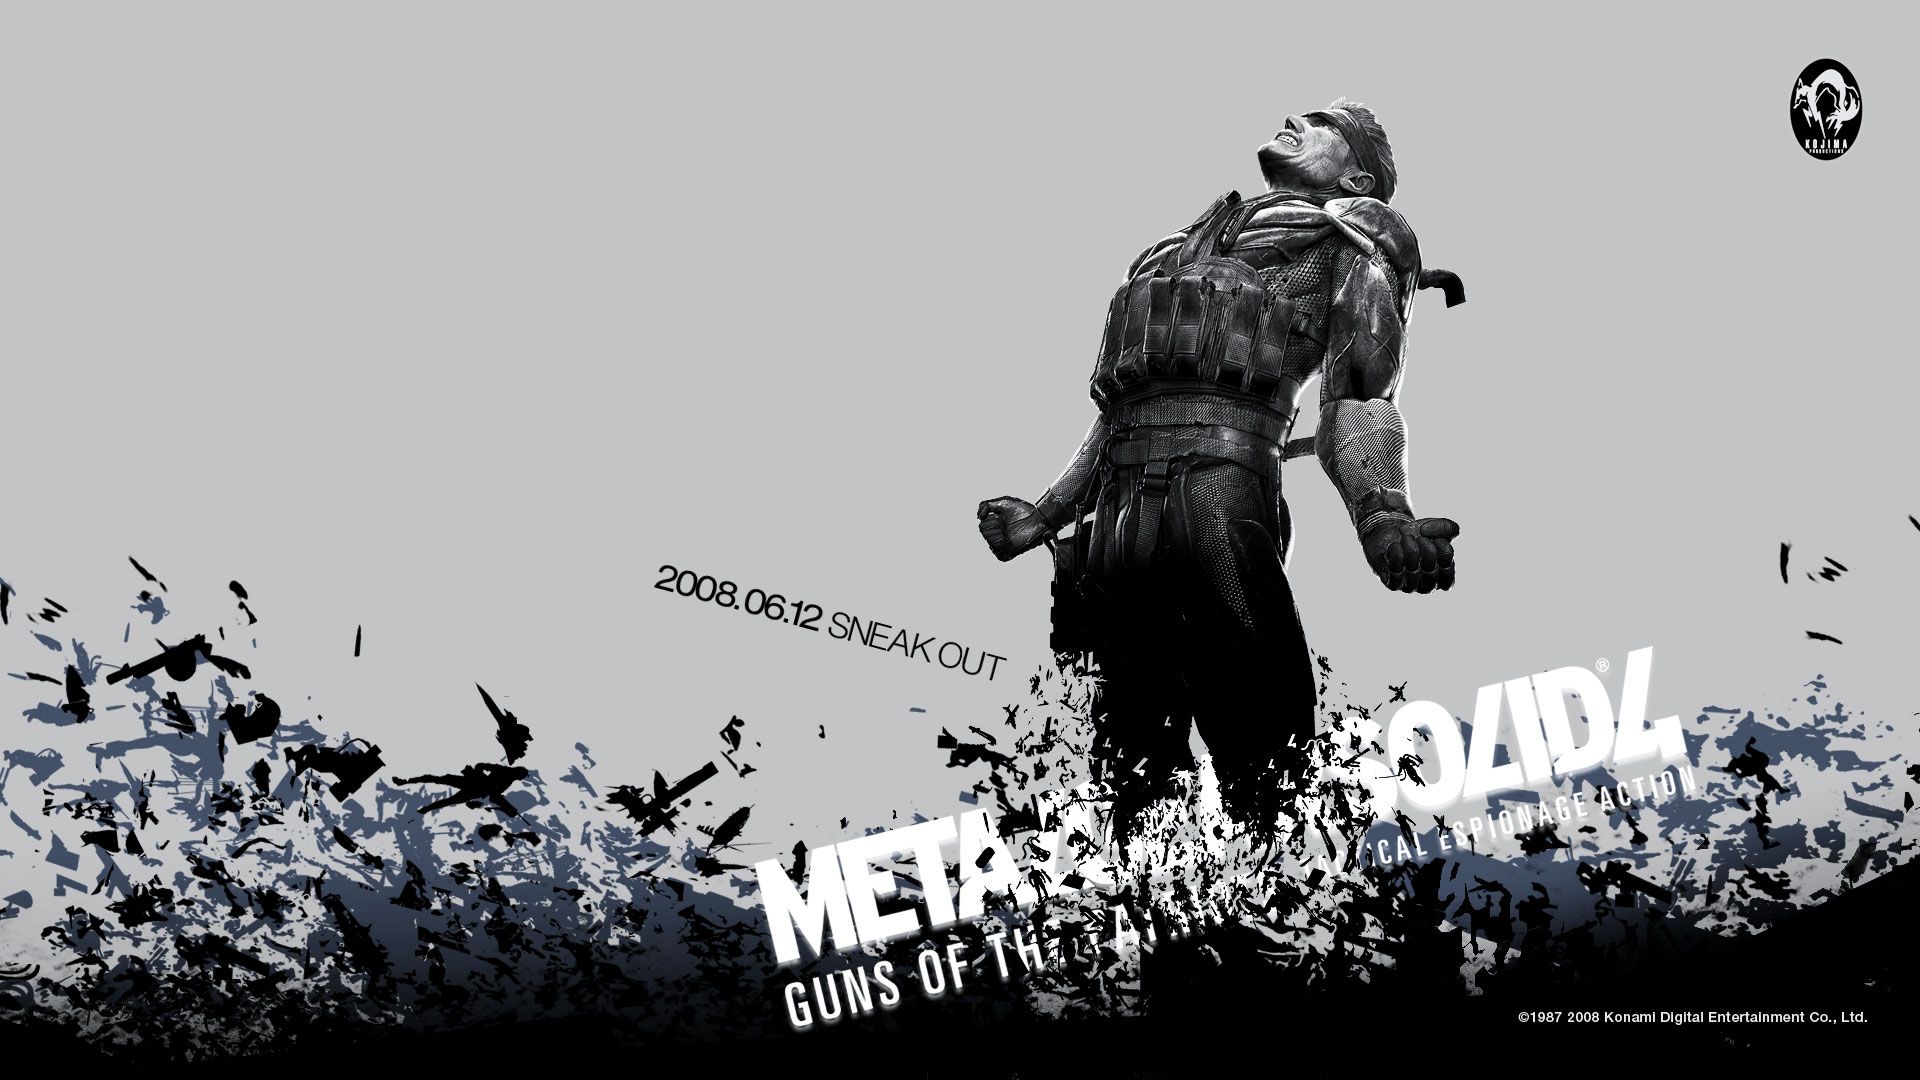 Metal Gear Solid g wallpaper | 1920x1080 | 112802 | WallpaperUP